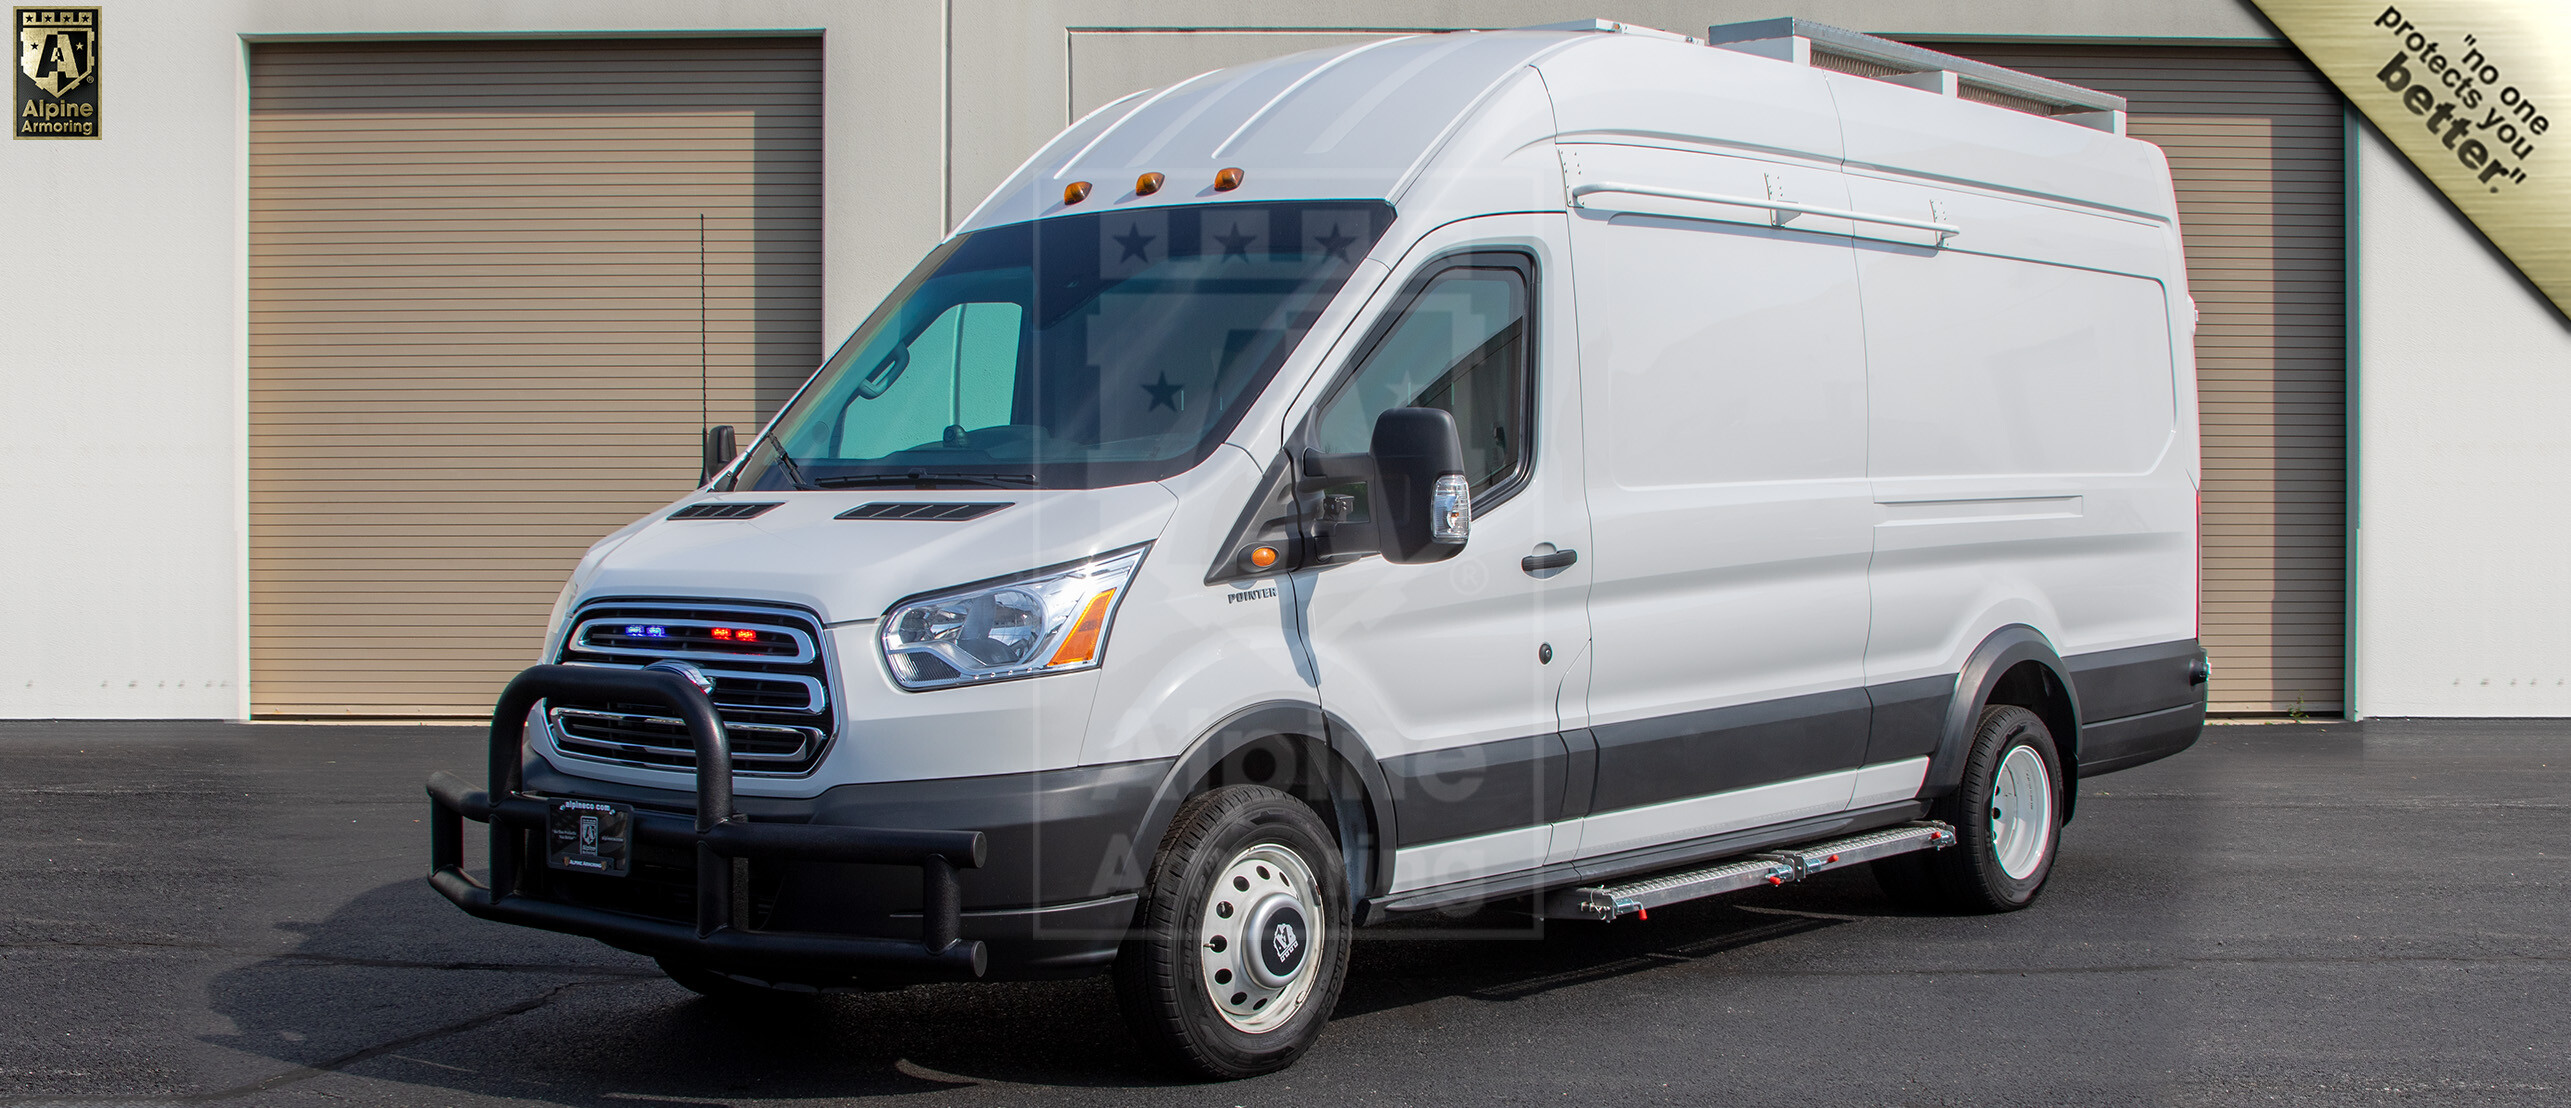 Armored SWAT Van | Ford Transit | Alpine Armoring® USA